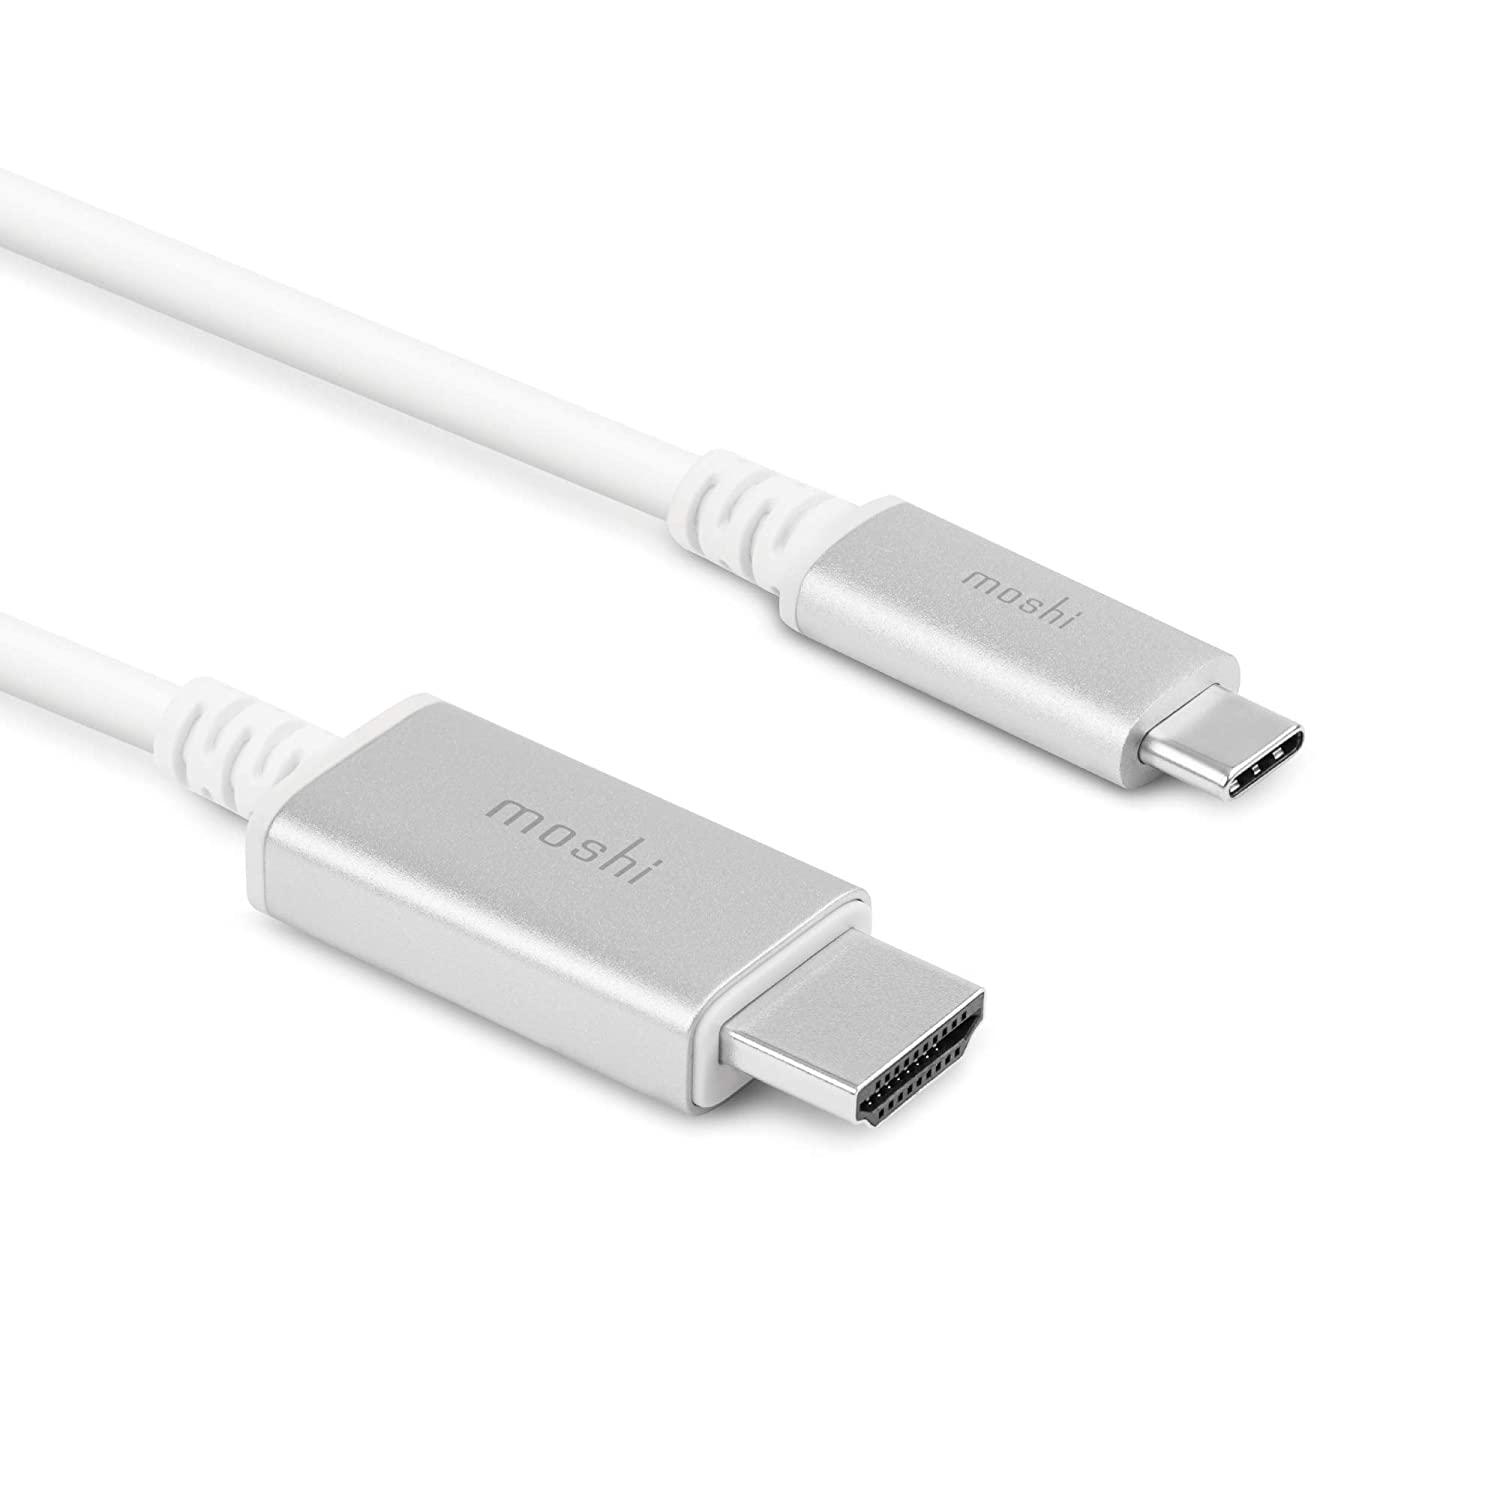 كيبل 0.25 متر  ( من USB-C الى HDMI ) - ابيض Moshi - USB-C to HDMI Cable 2M - 4K USB Type C to HDMI Adapter Cable